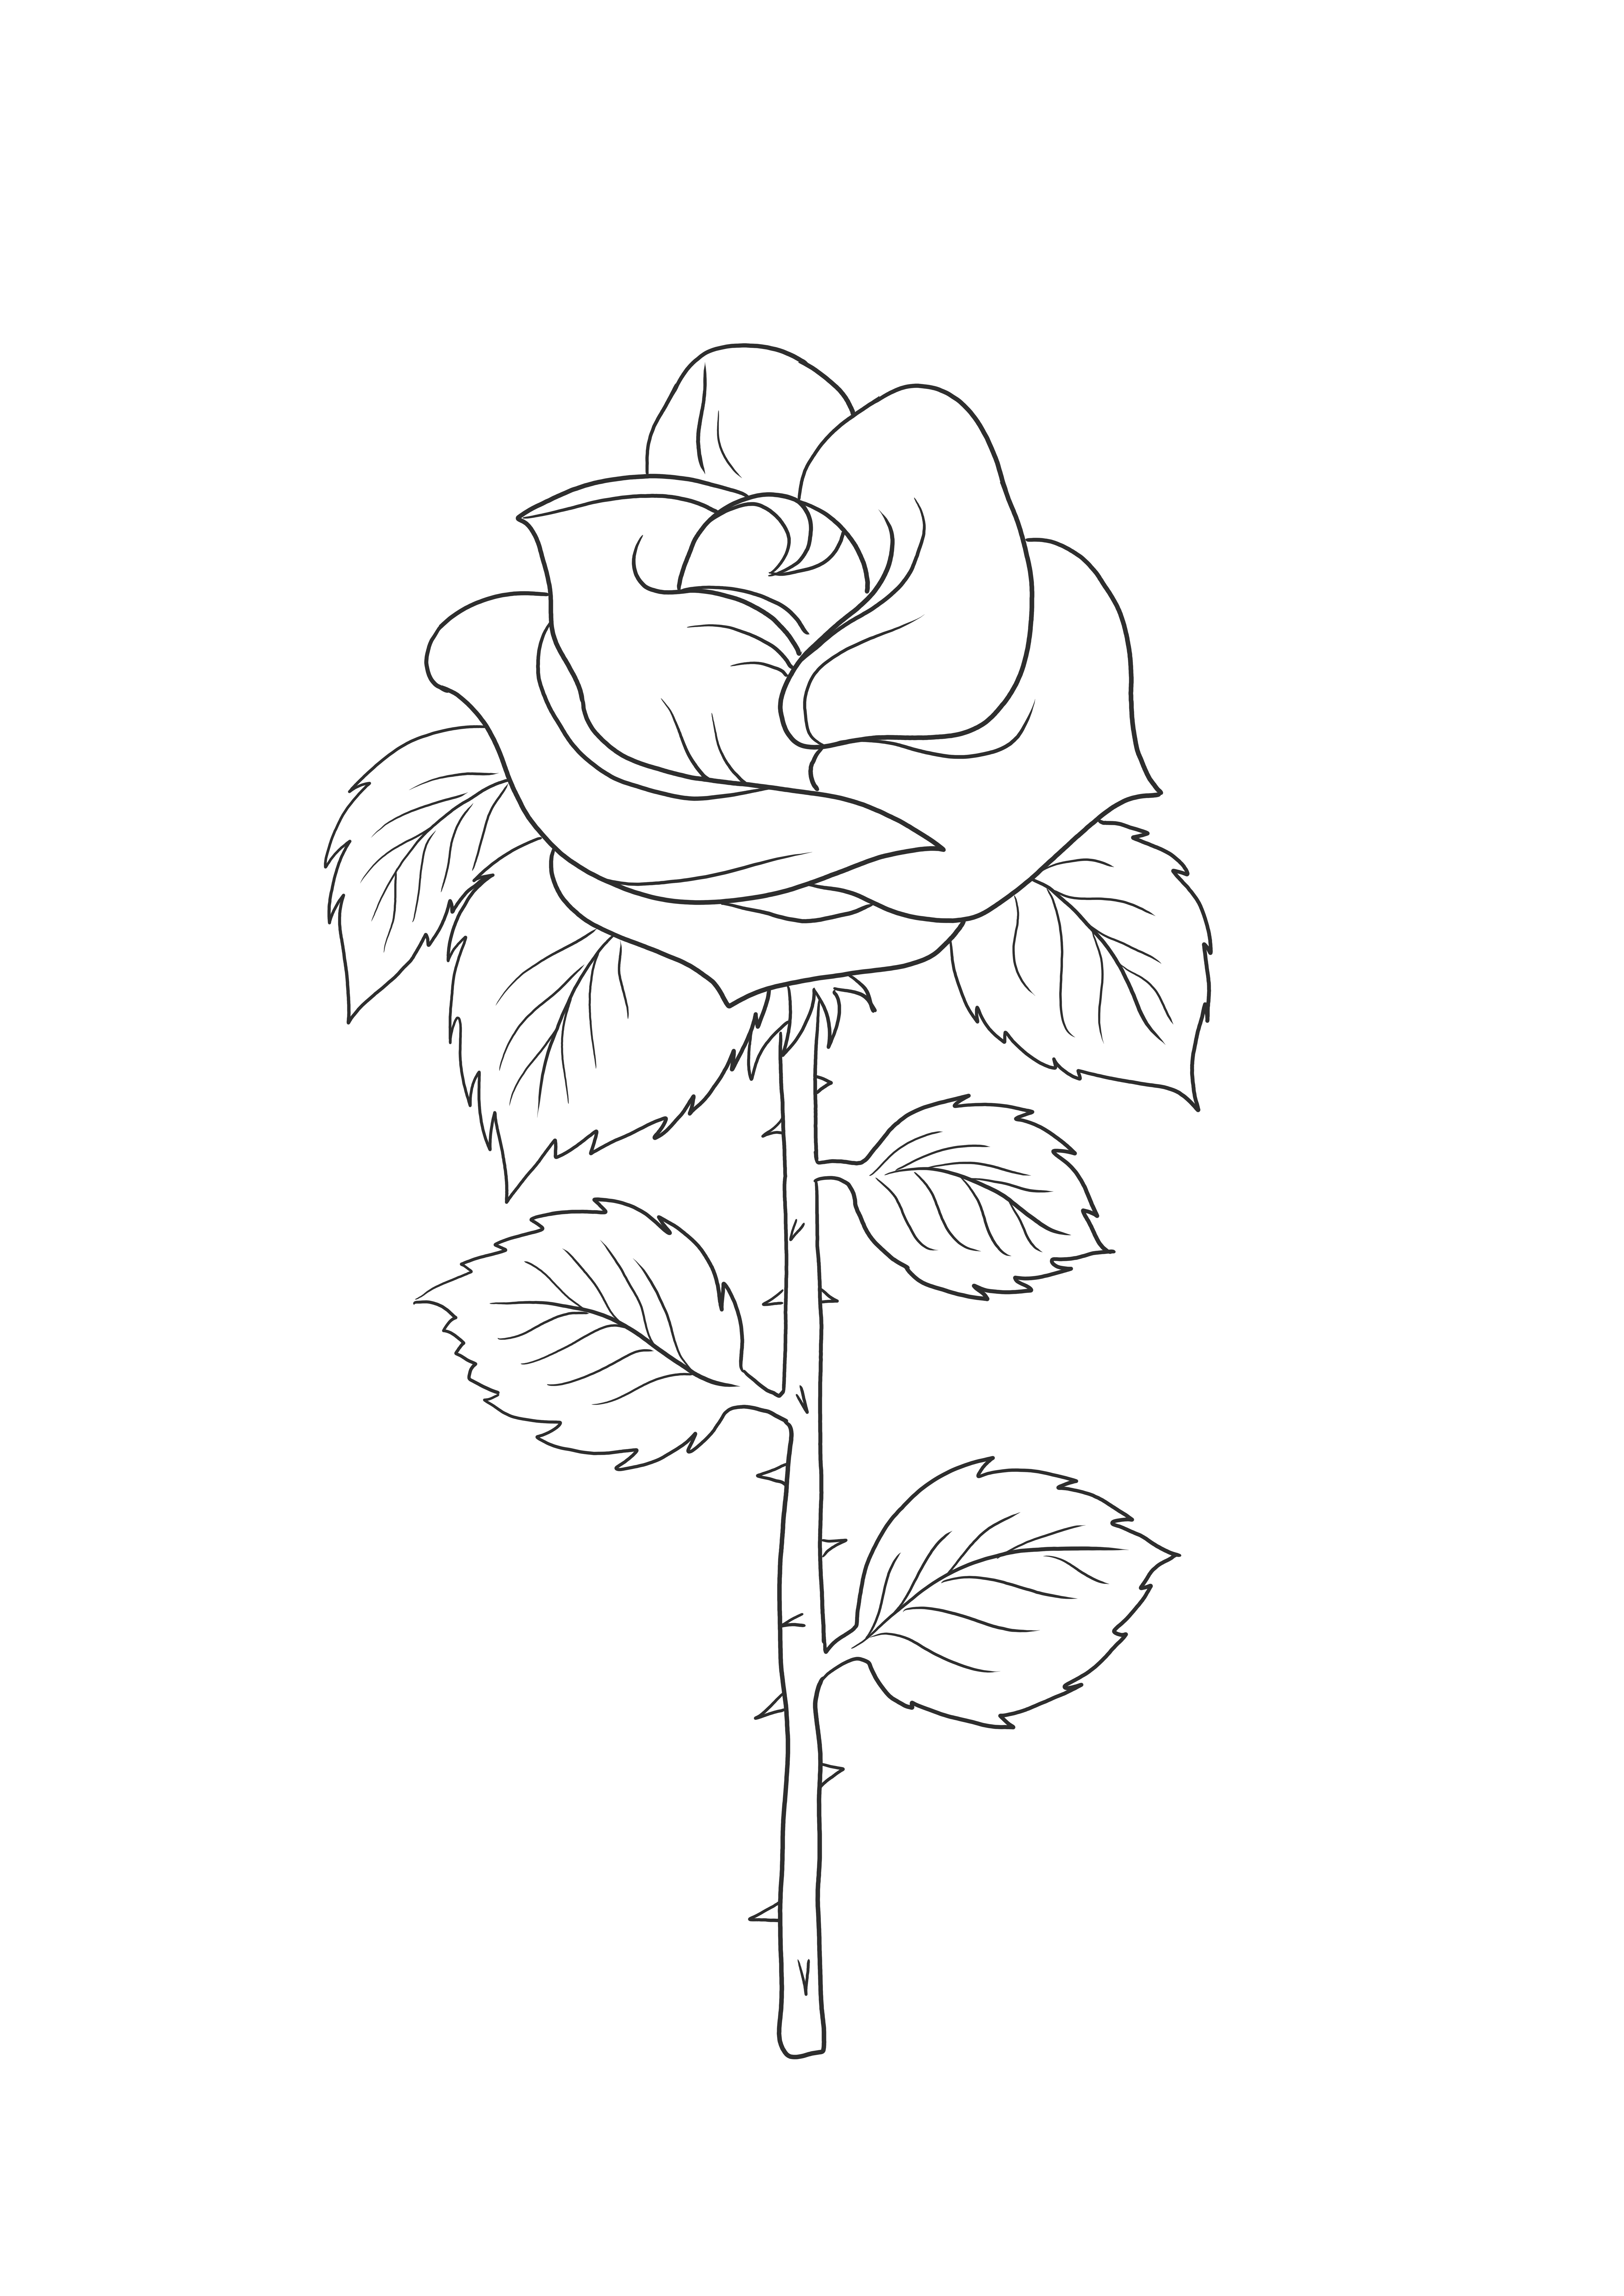 O imagine de colorat a unui instrument simplu de trandafir pentru a preda despre plante